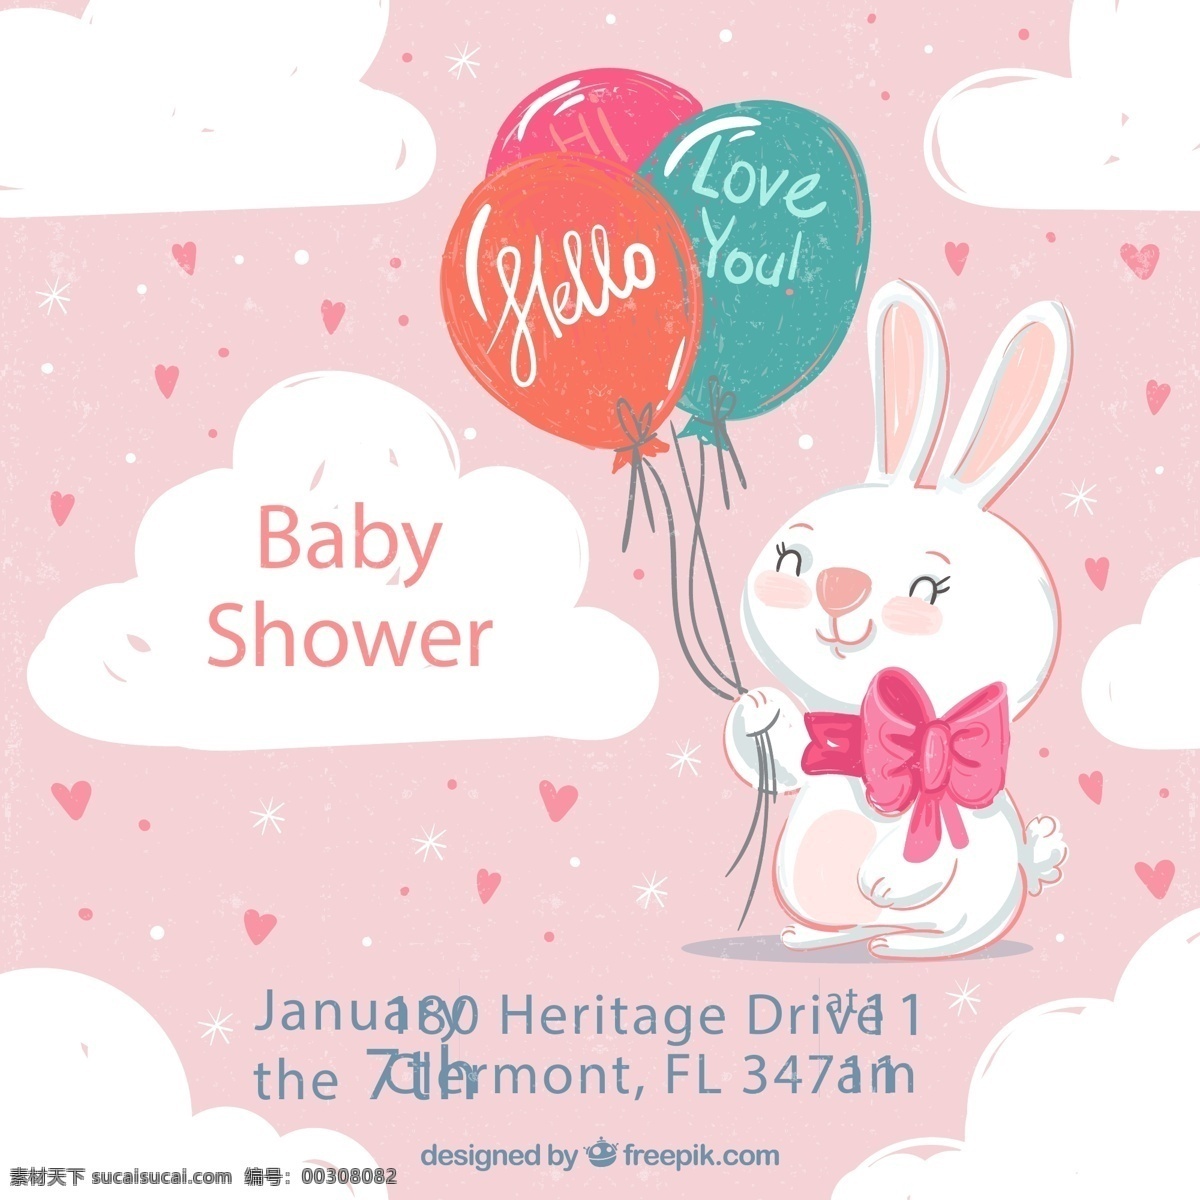 白兔 迎 婴 派对 海报 云朵 爱心 水彩 兔子 气球束 迎婴 源文件 矢量 高清图片